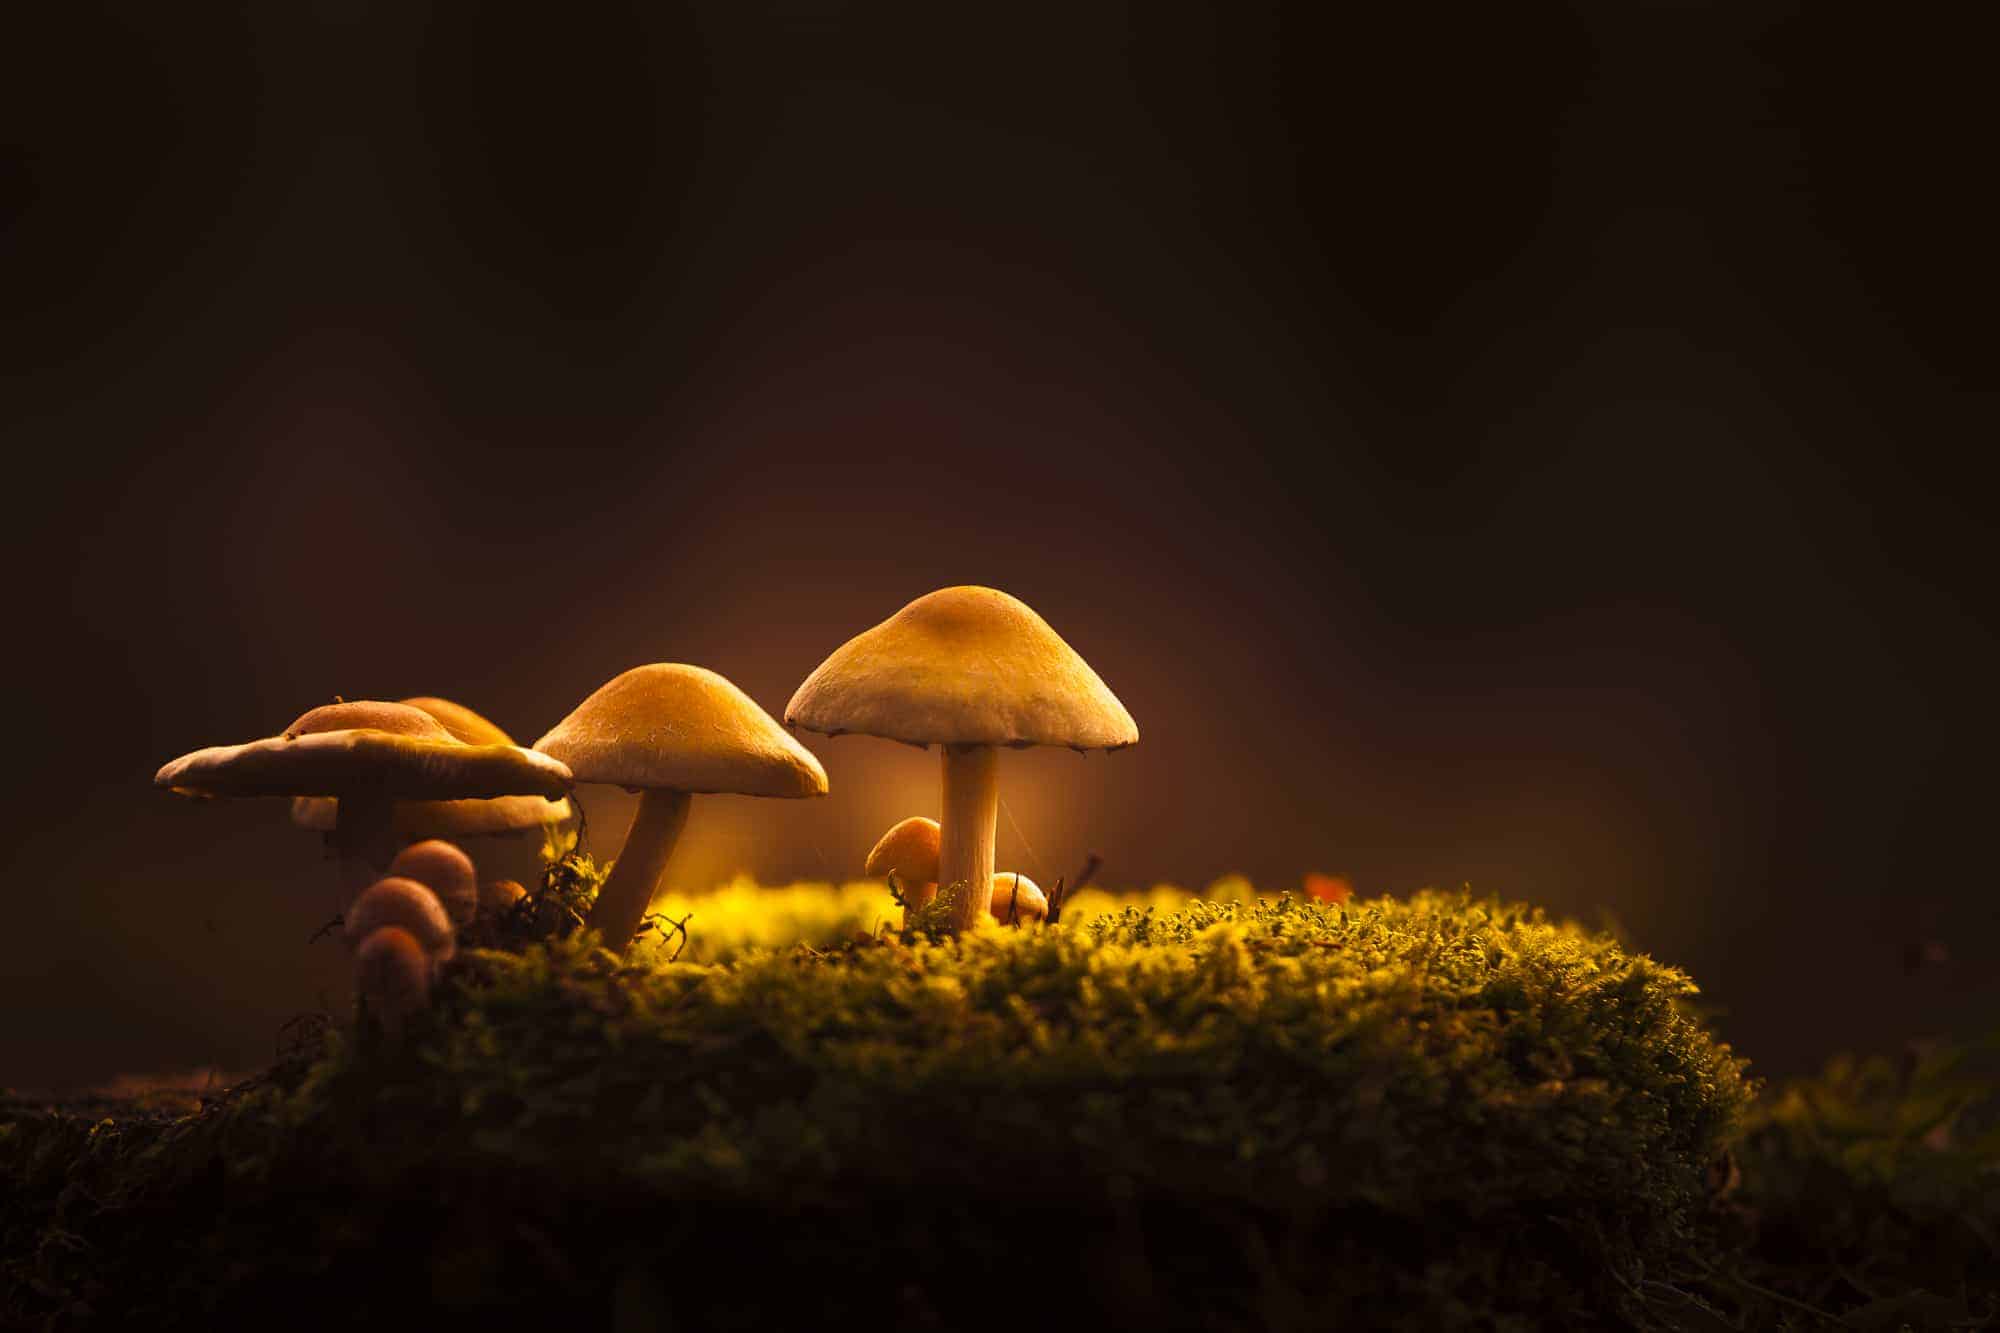 Hoe fotografeer je paddenstoelen?